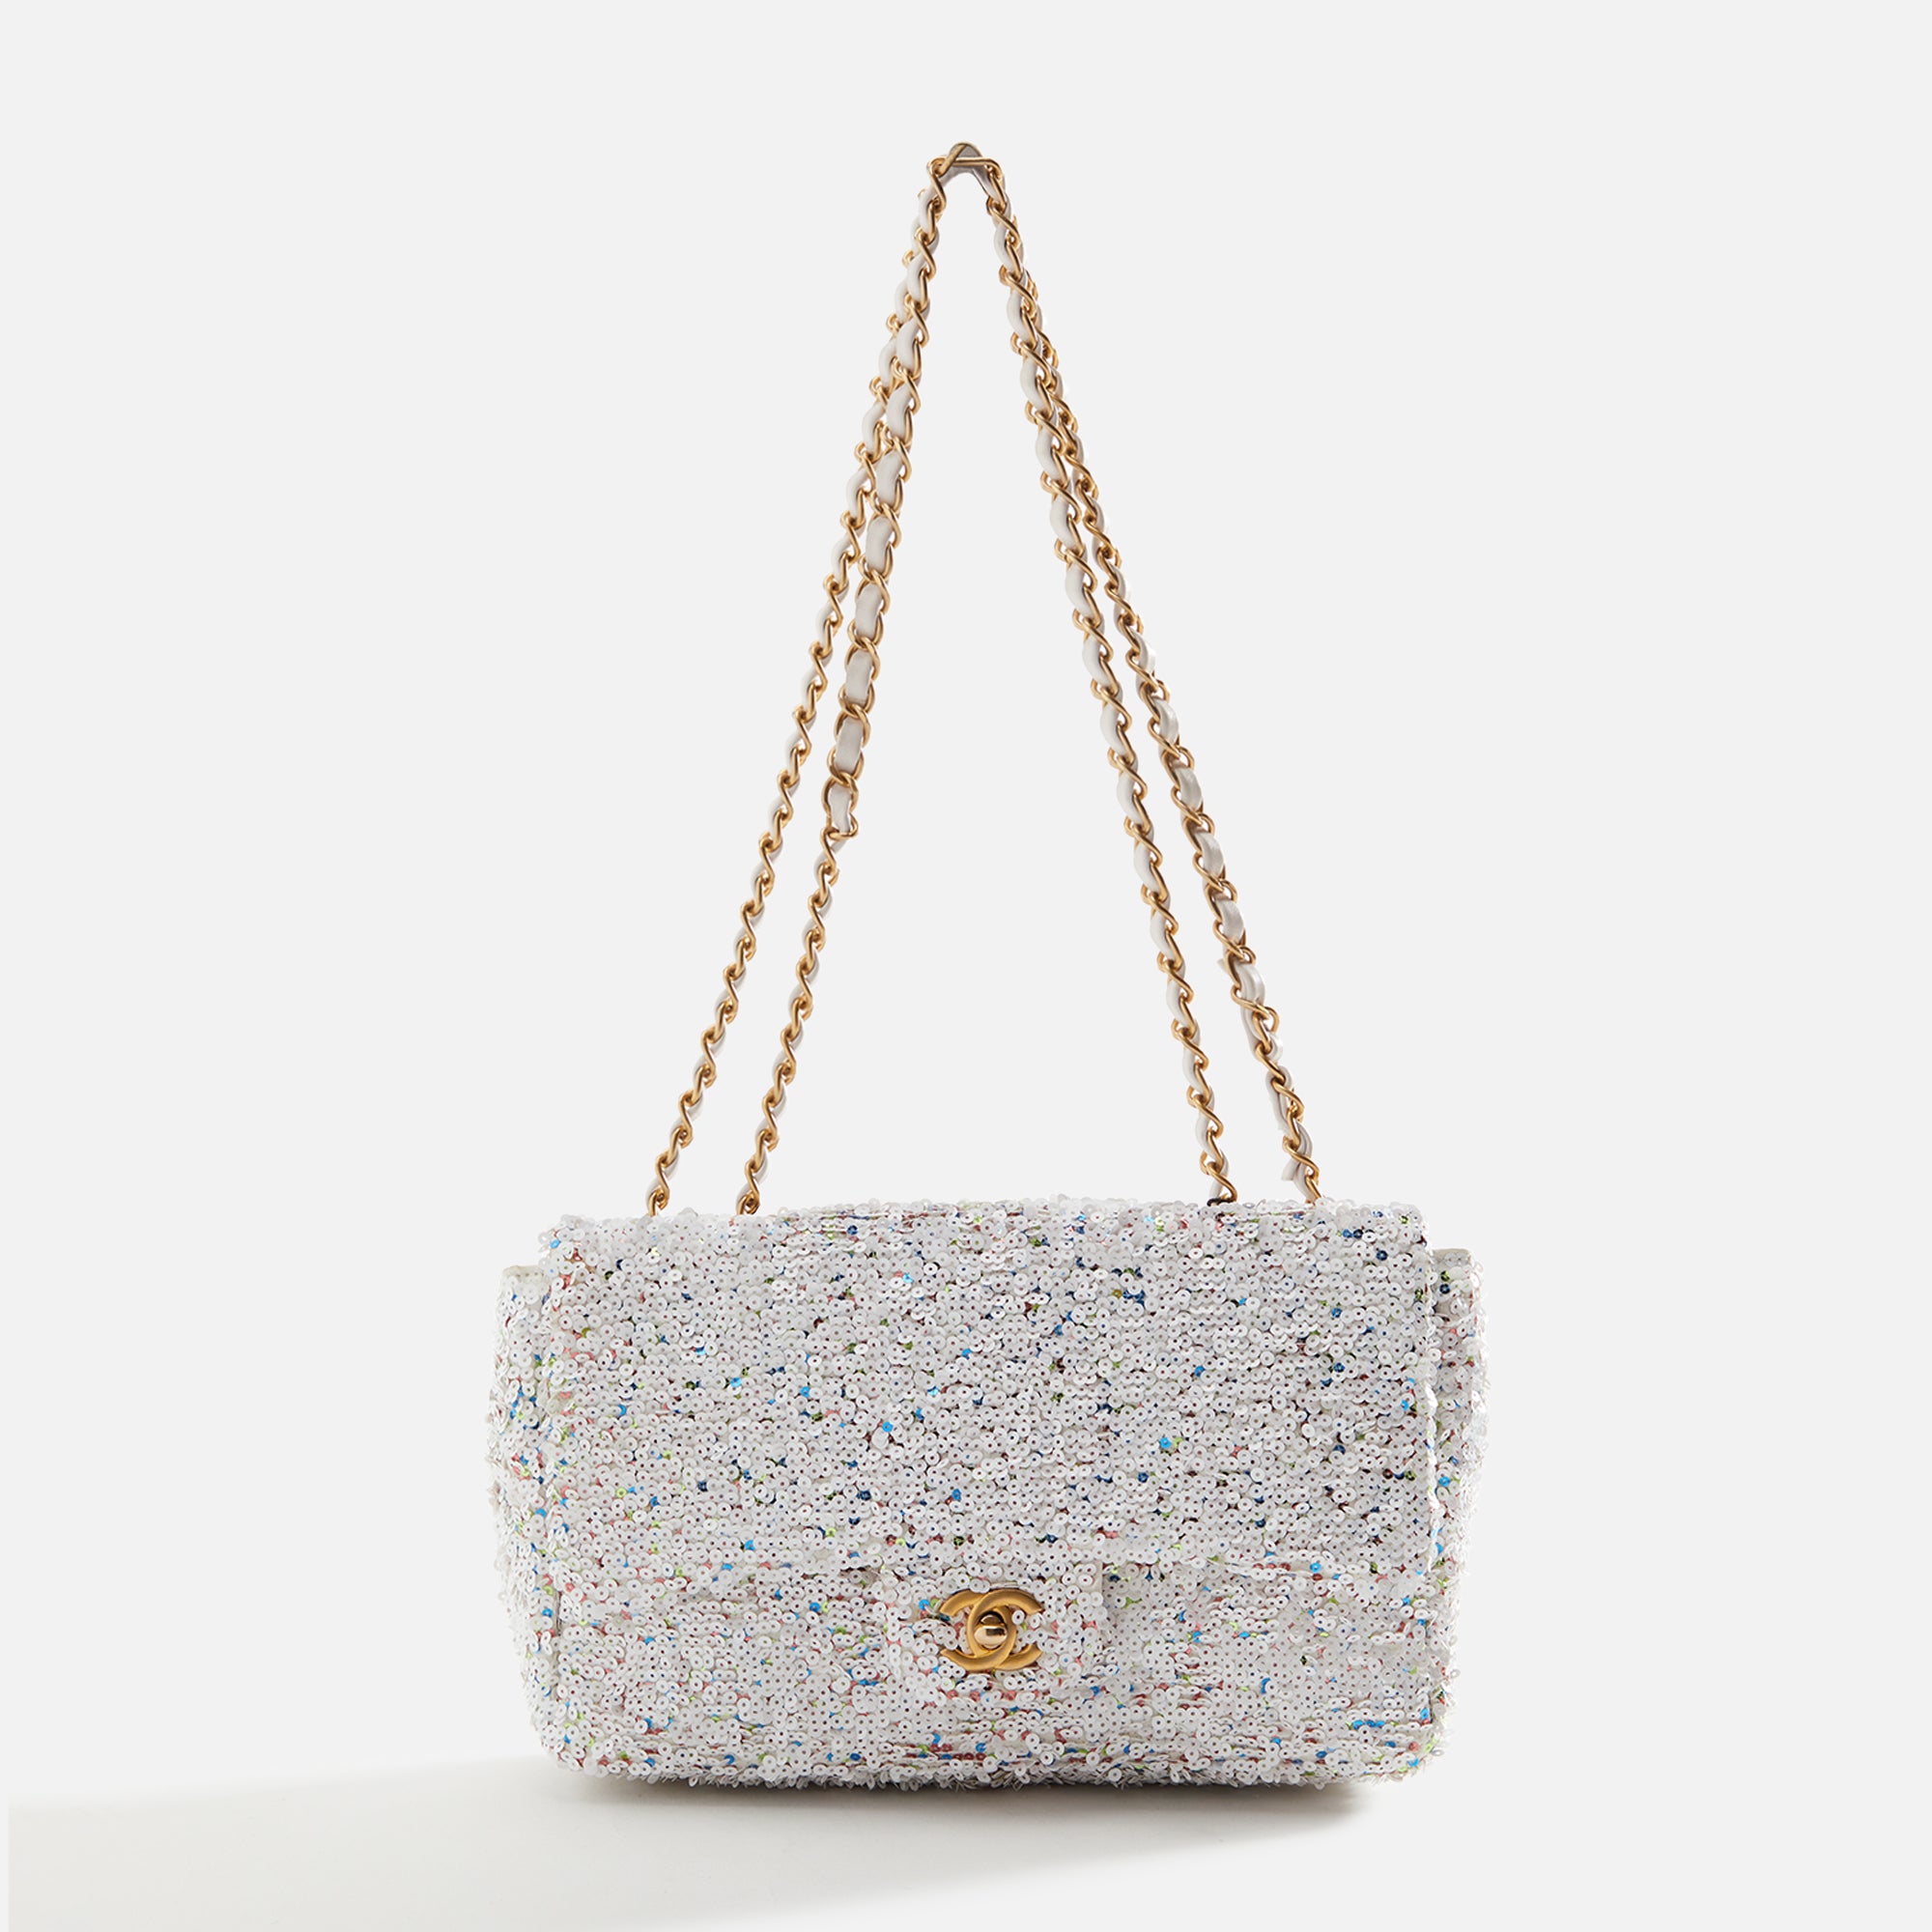 WGACA Chanel Caviar Incognito Mini Square Flap Bag - Pink